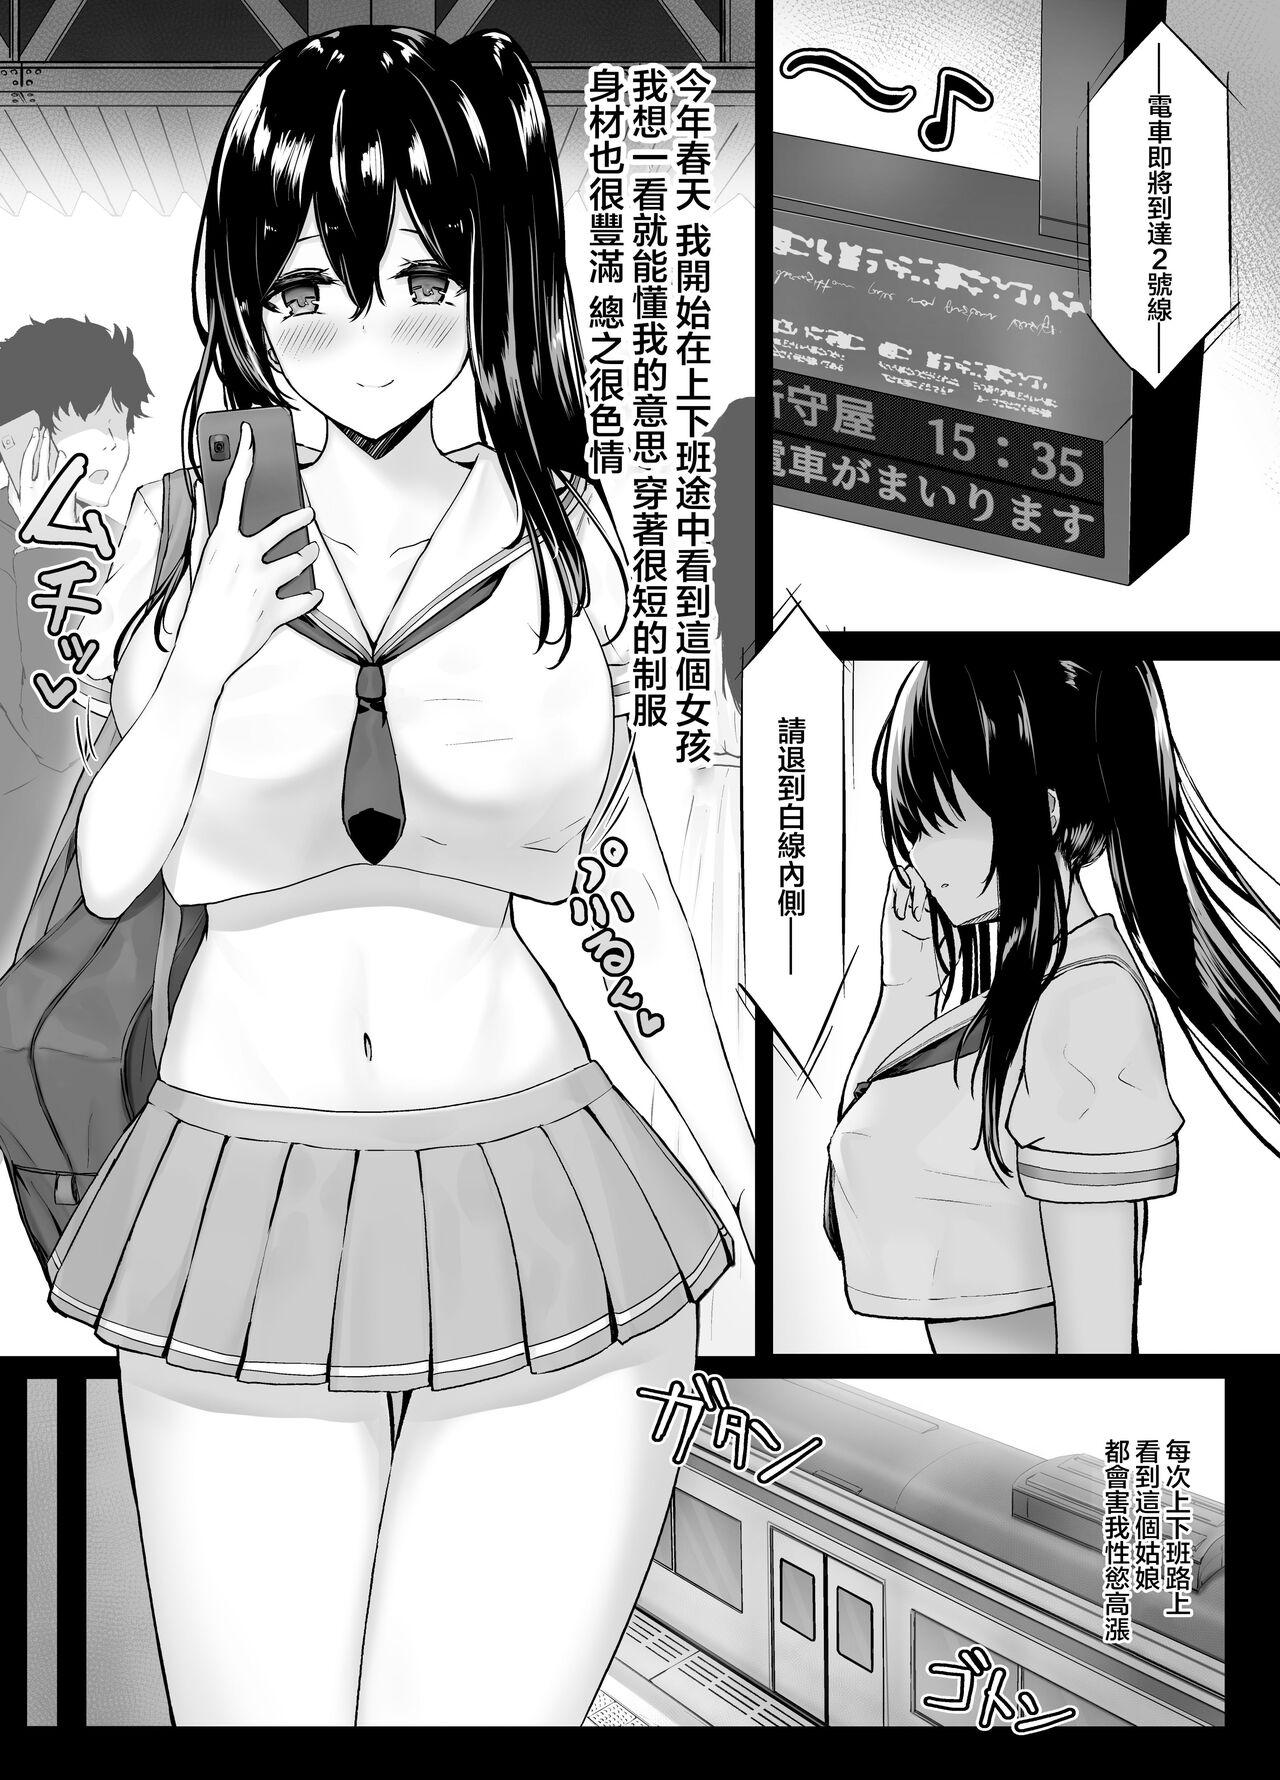 Petite Teenager Mijikame Seifuku Musume Seijin Muke Manga - Original Audition - Page 5